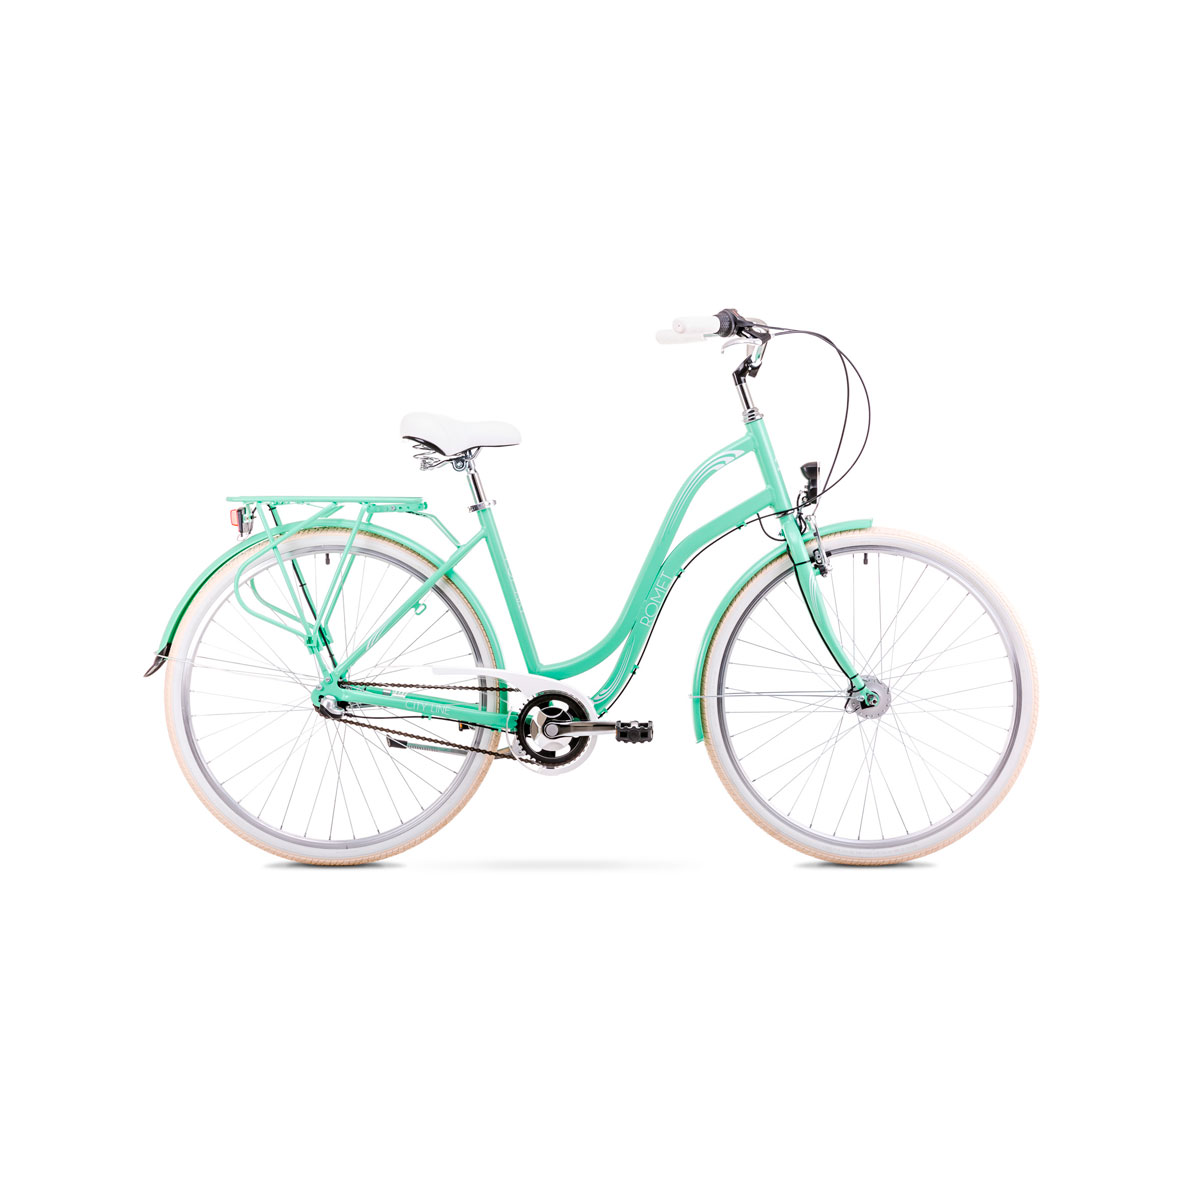 bici de mujer bonita para regalo equipada y elegante